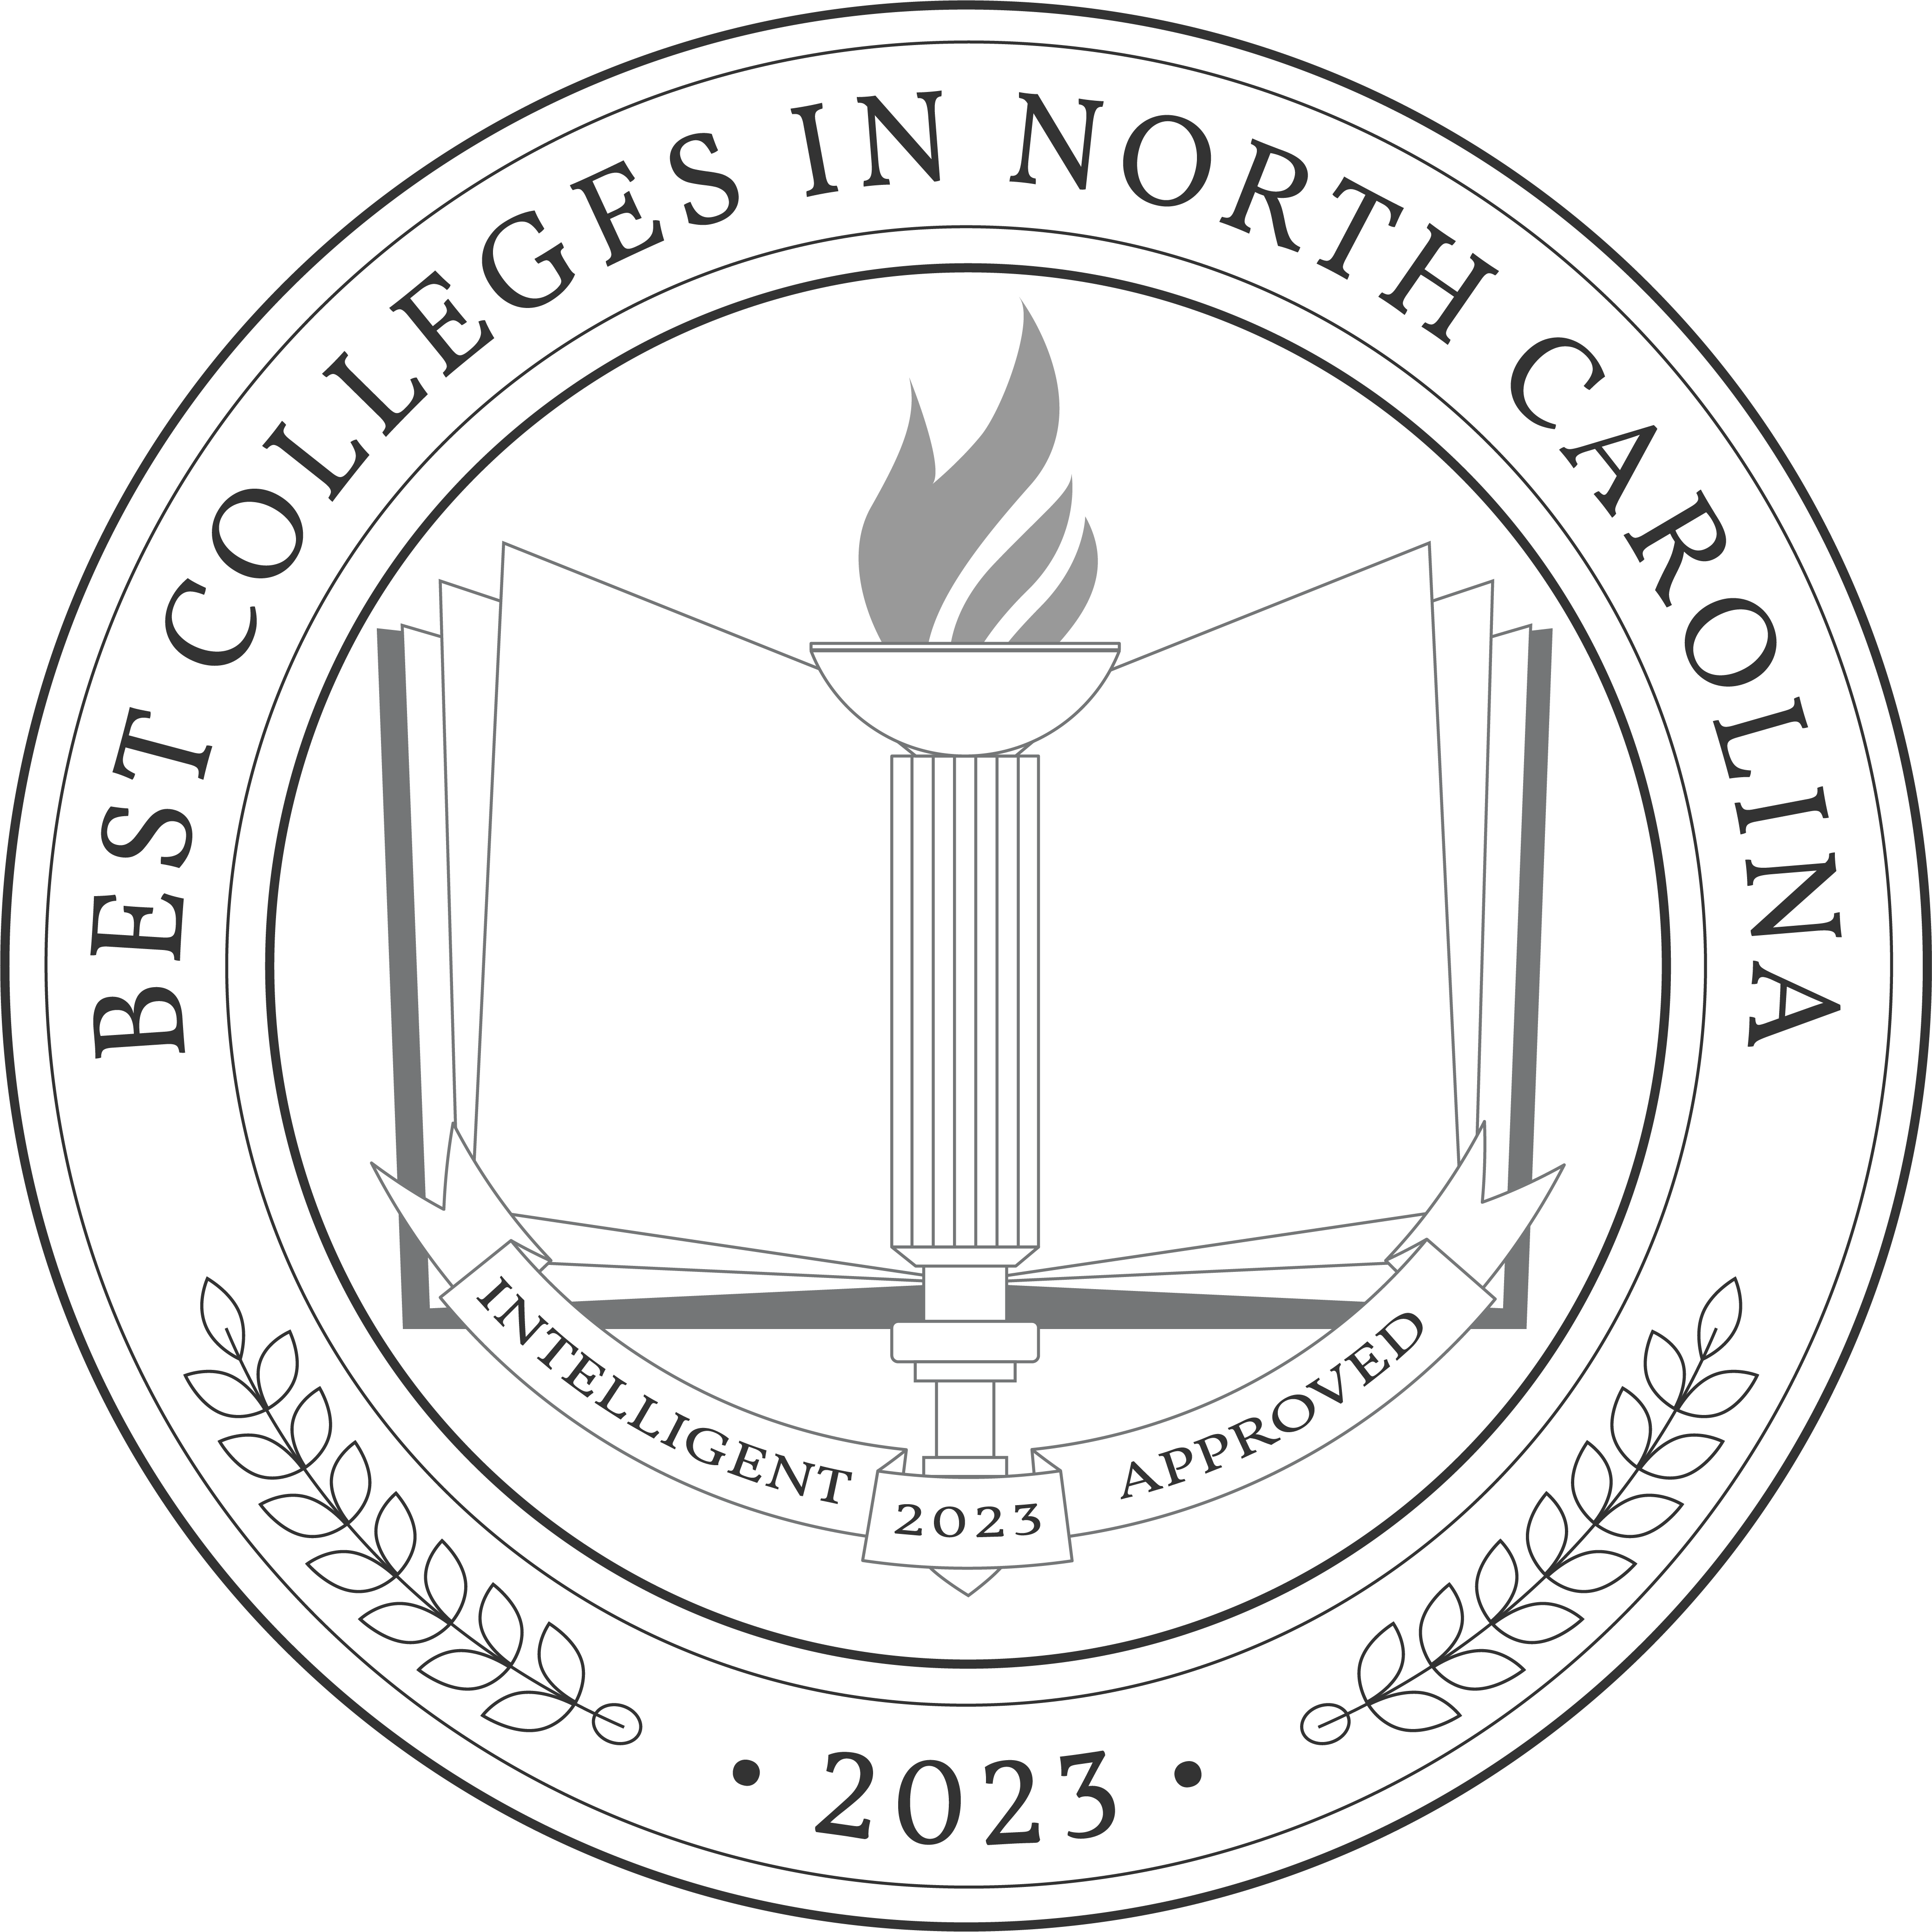 Best Colleges In North Carolina 2023 Badge 